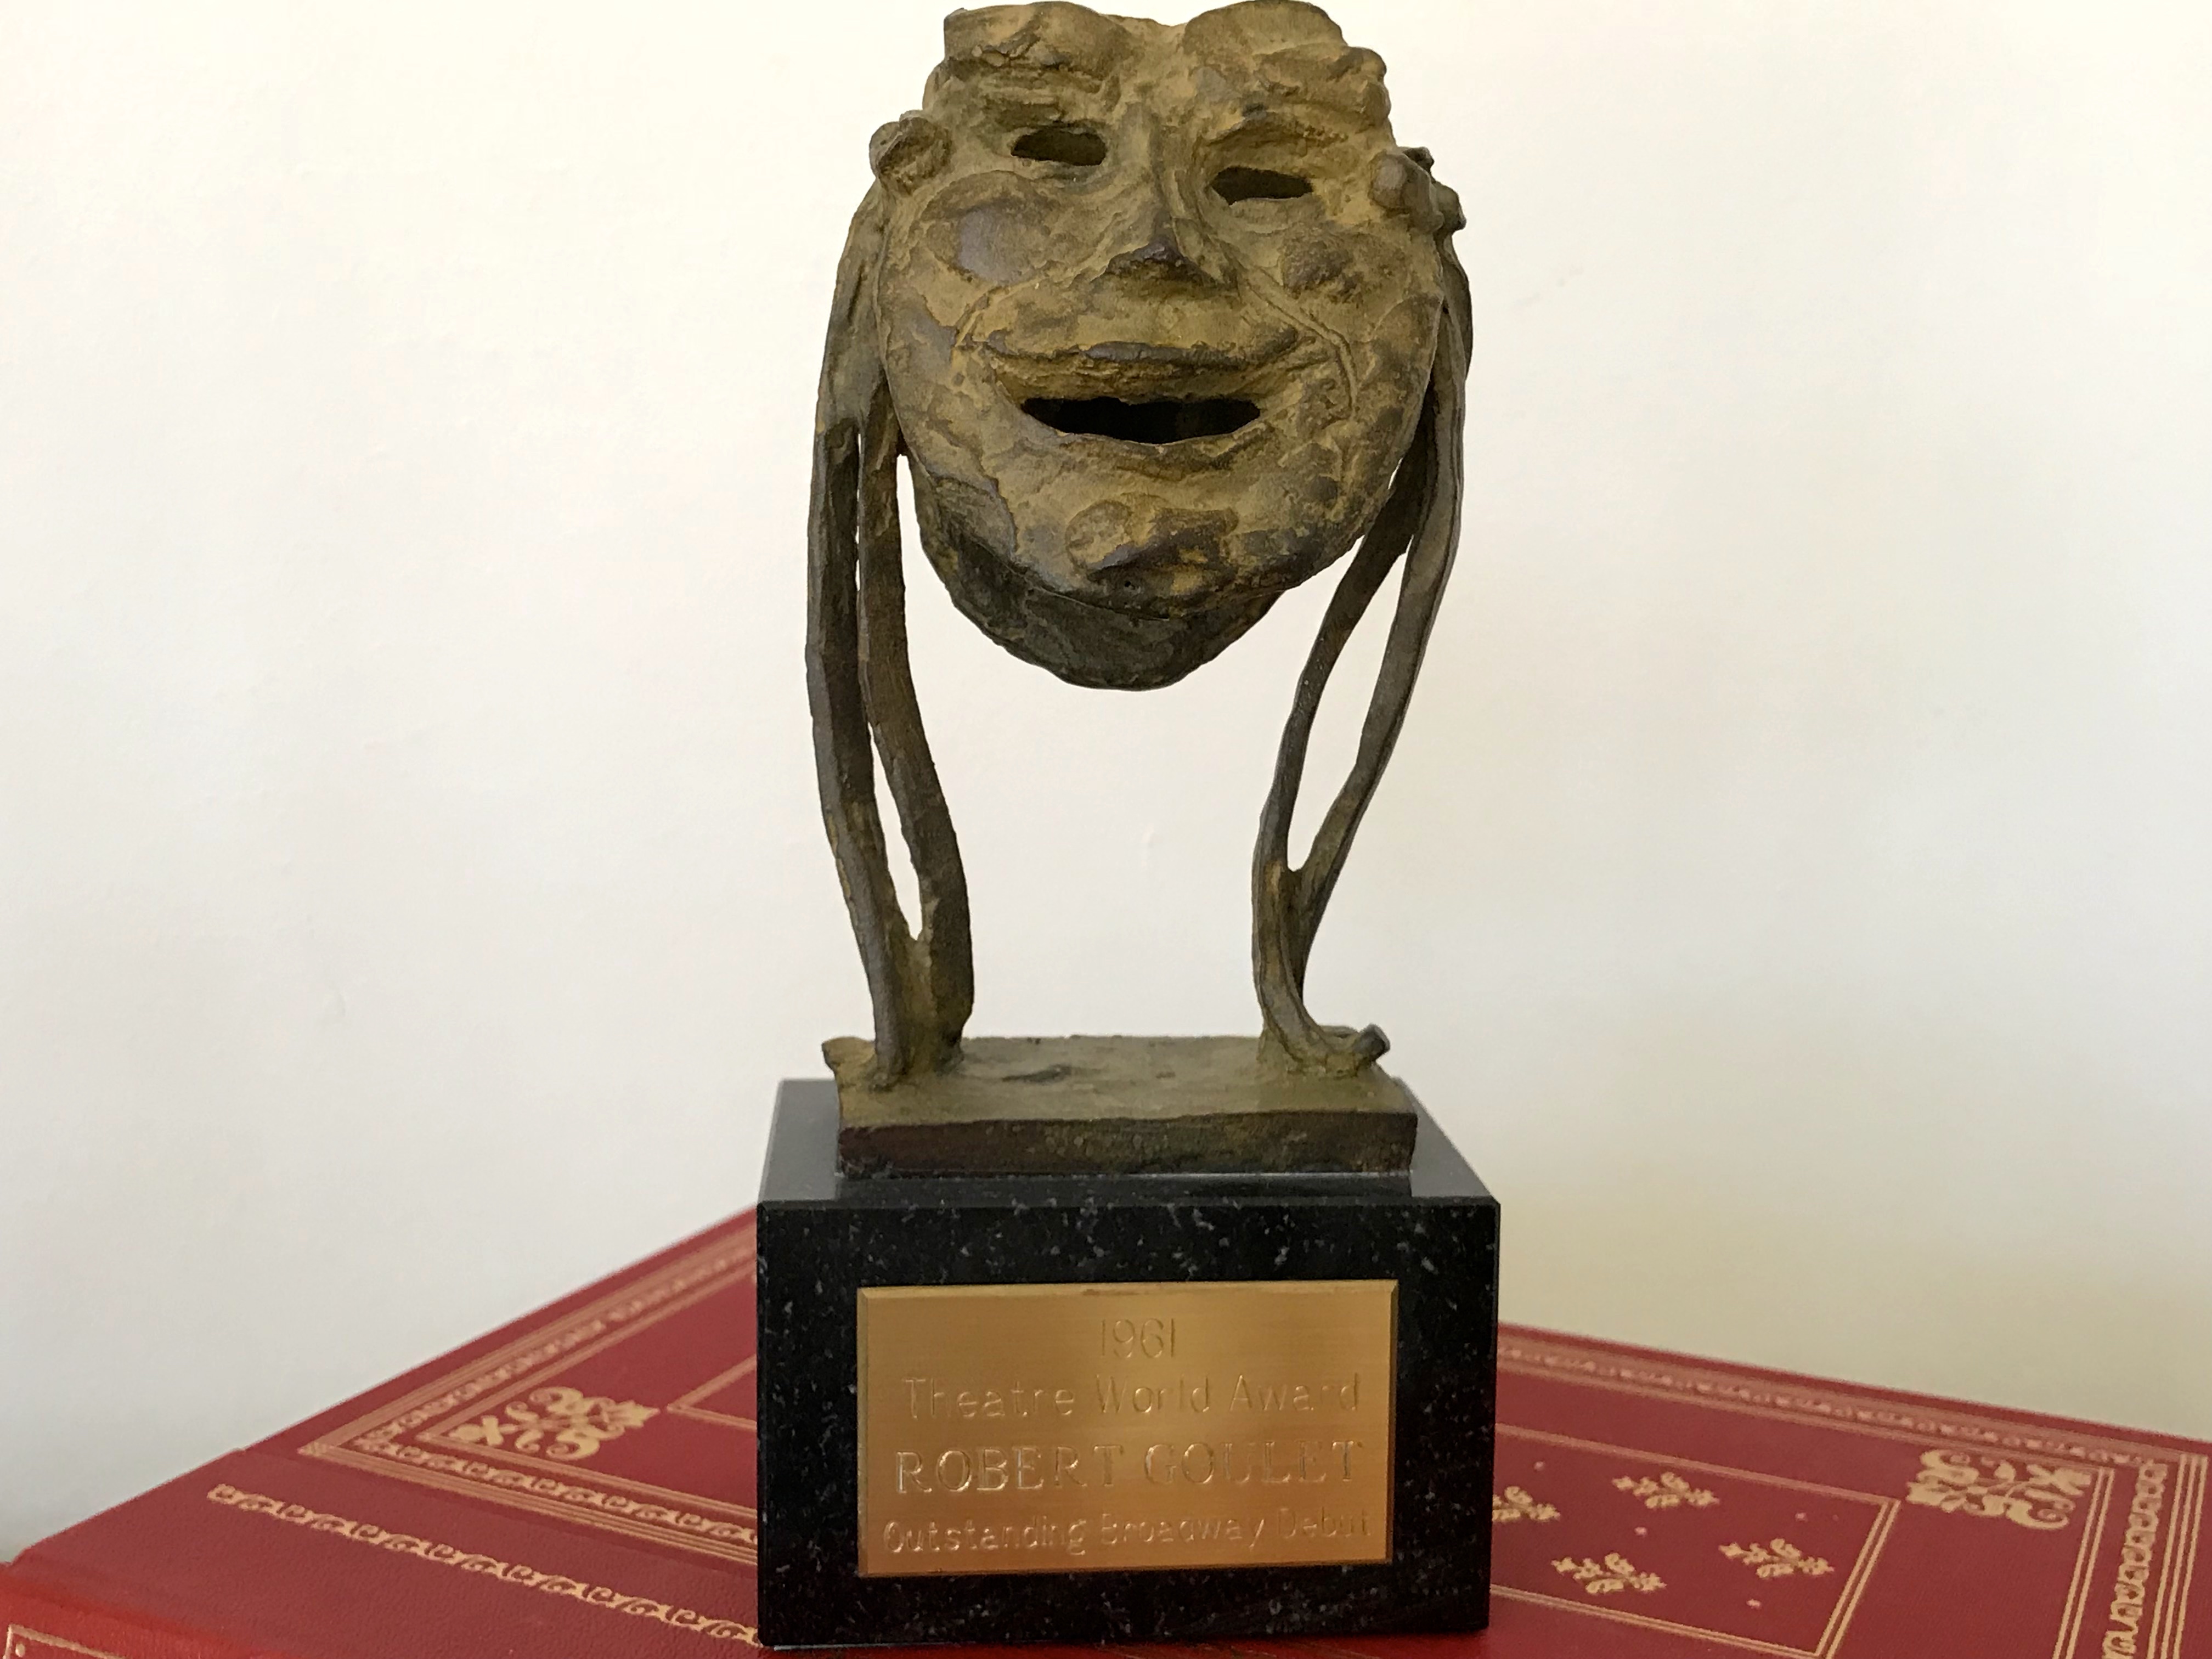 Theater World Award (1960)